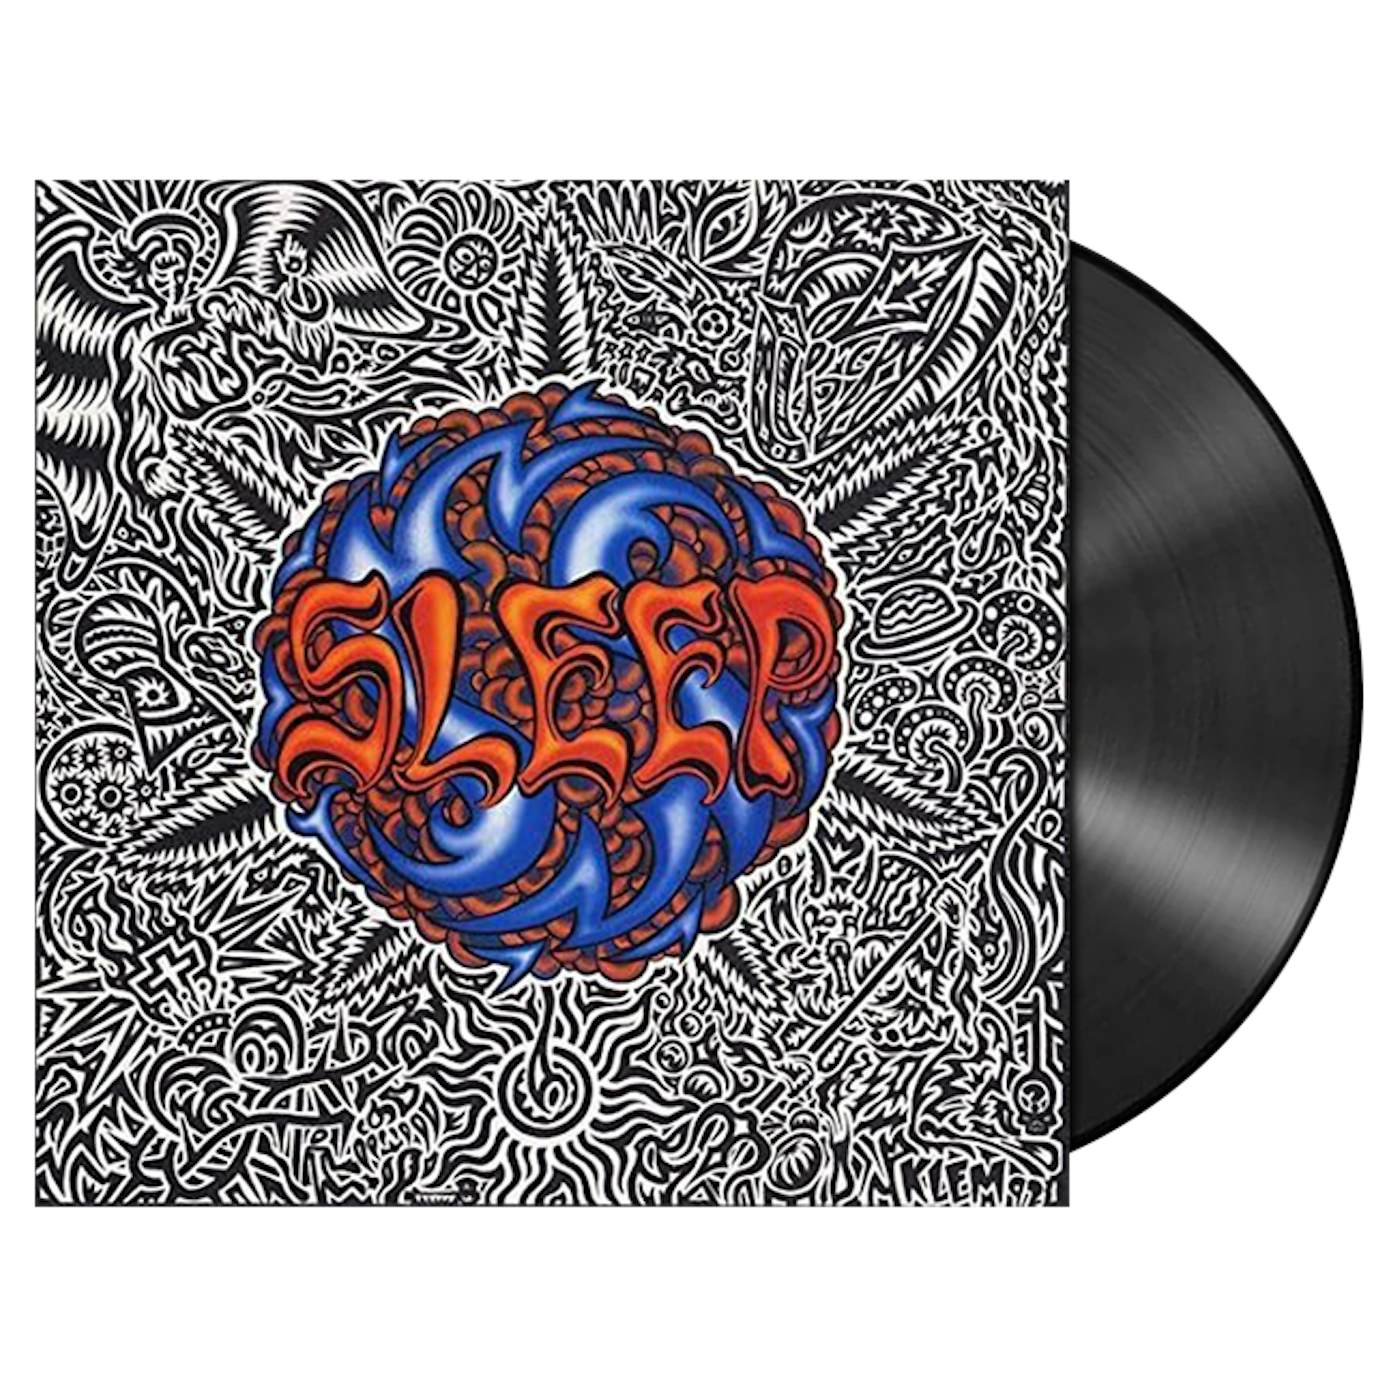 SLEEP - 'Sleep's Holy Mountain' LP (Vinyl)